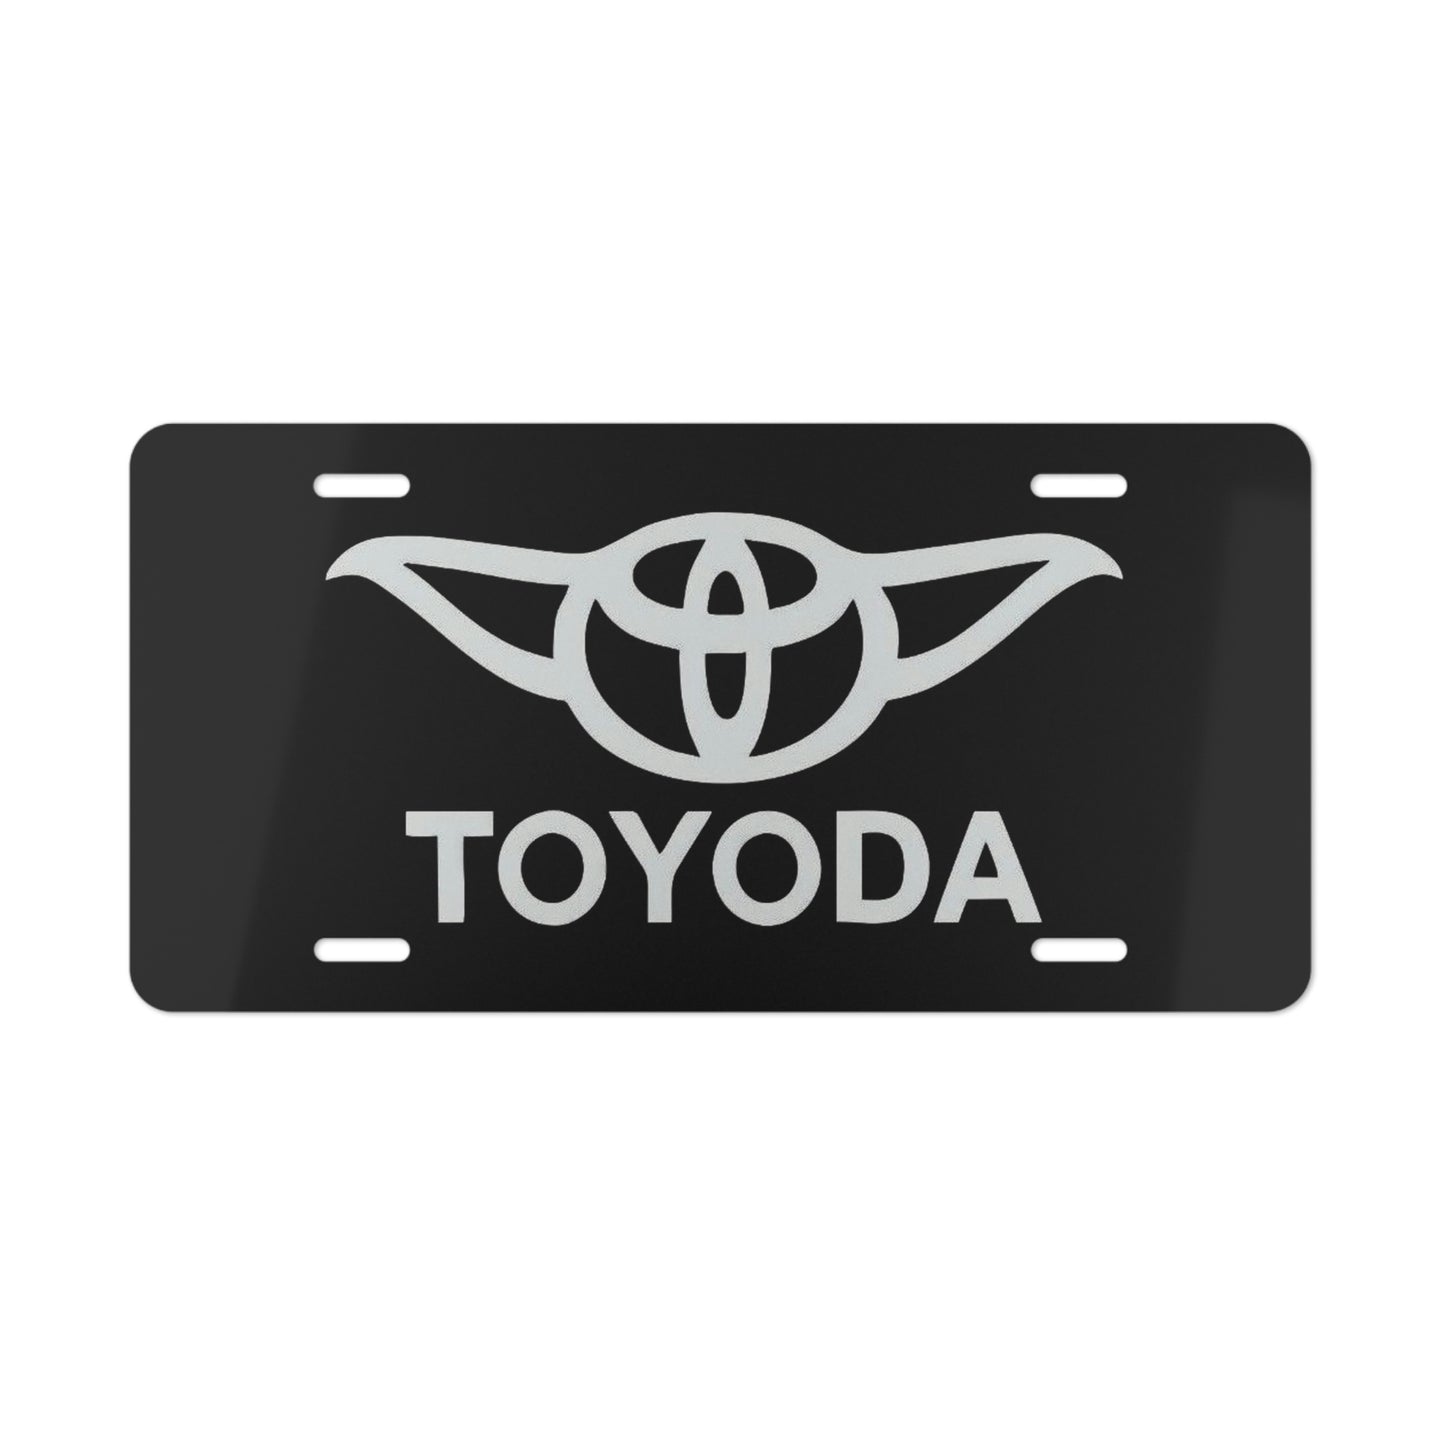 Toyoda Spoof Vanity Plate